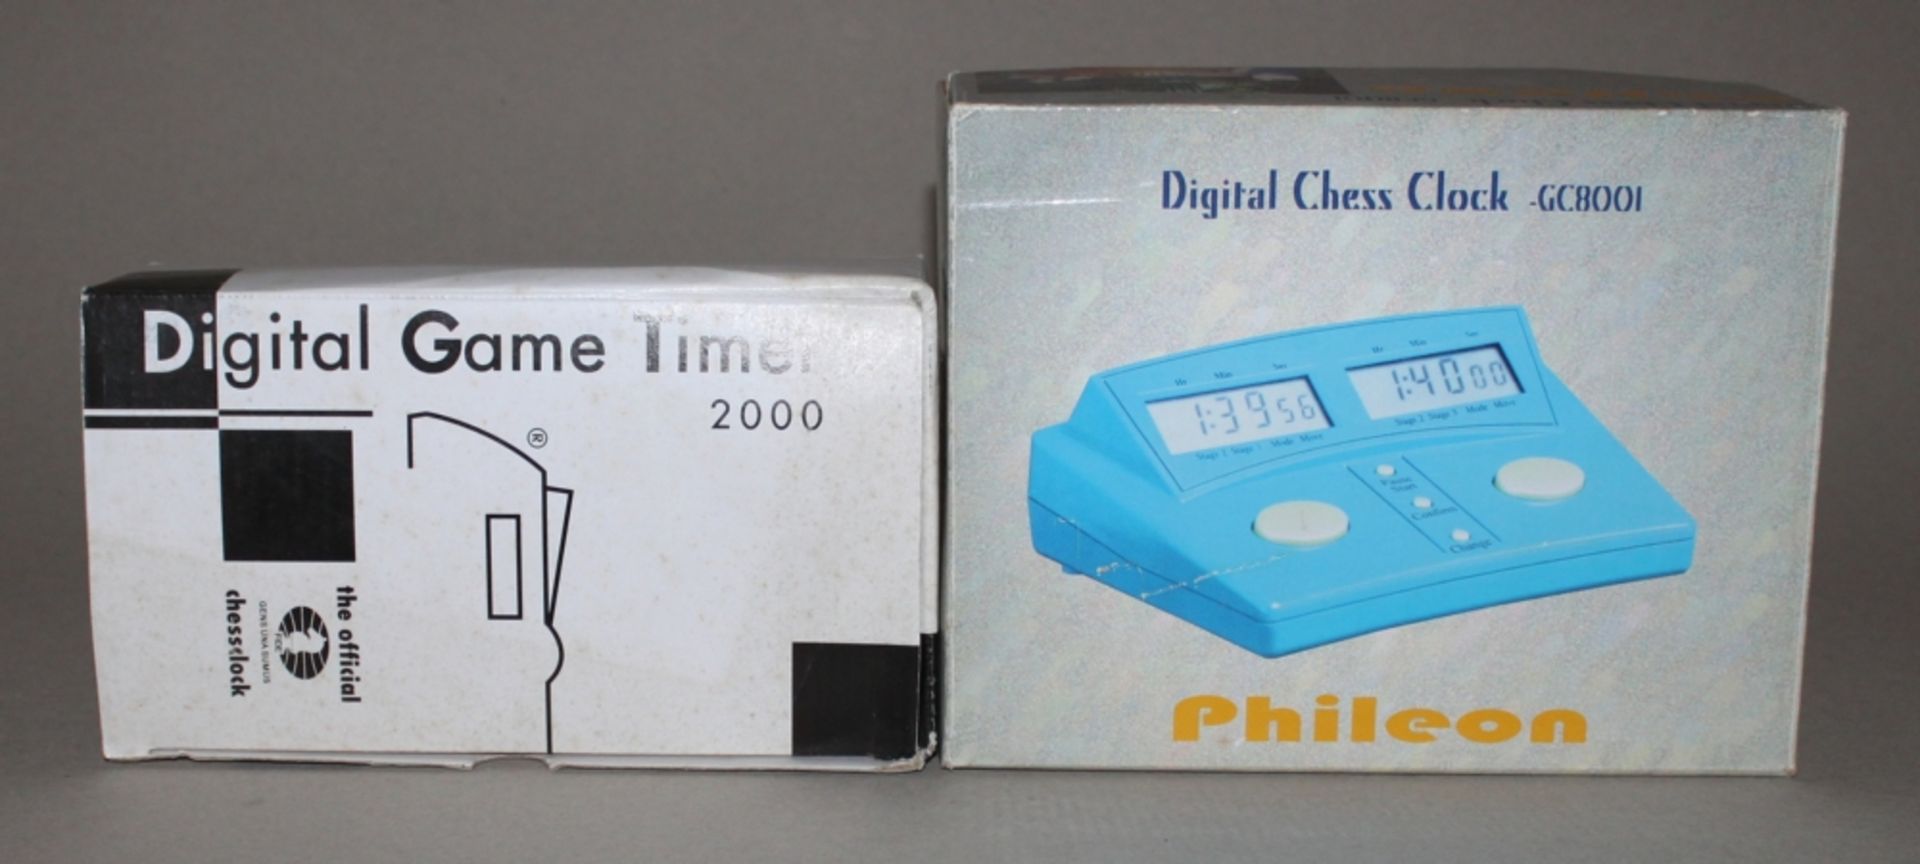 Schachuhr. Digitale Schachuhr „Digital Game Timer 2000“ im rotbraunen Kunststoffgehäuse mit